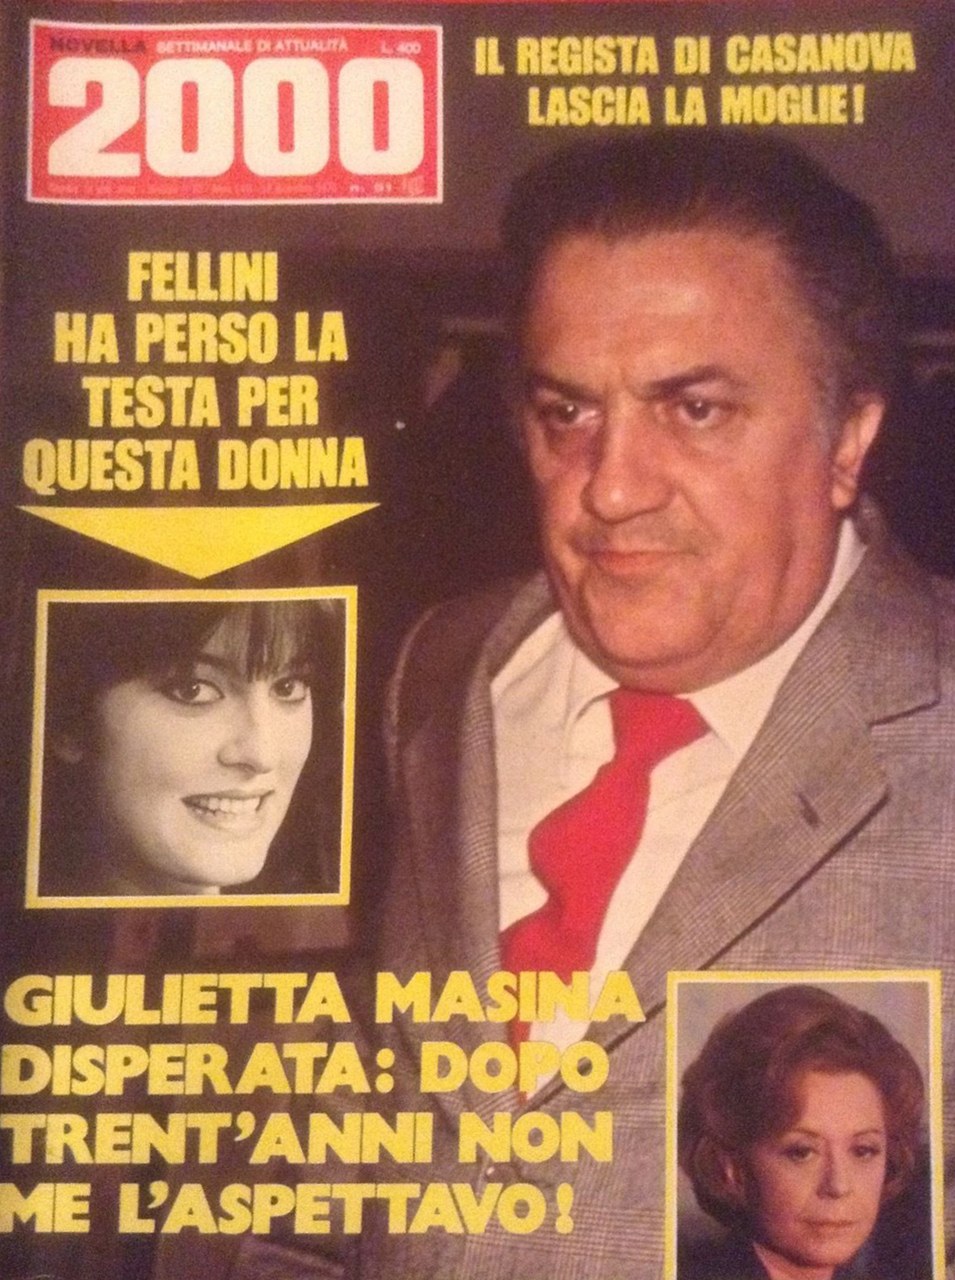 Fig. 5 Giulietta Masina nella copertina di Novella 2000 del 1976
